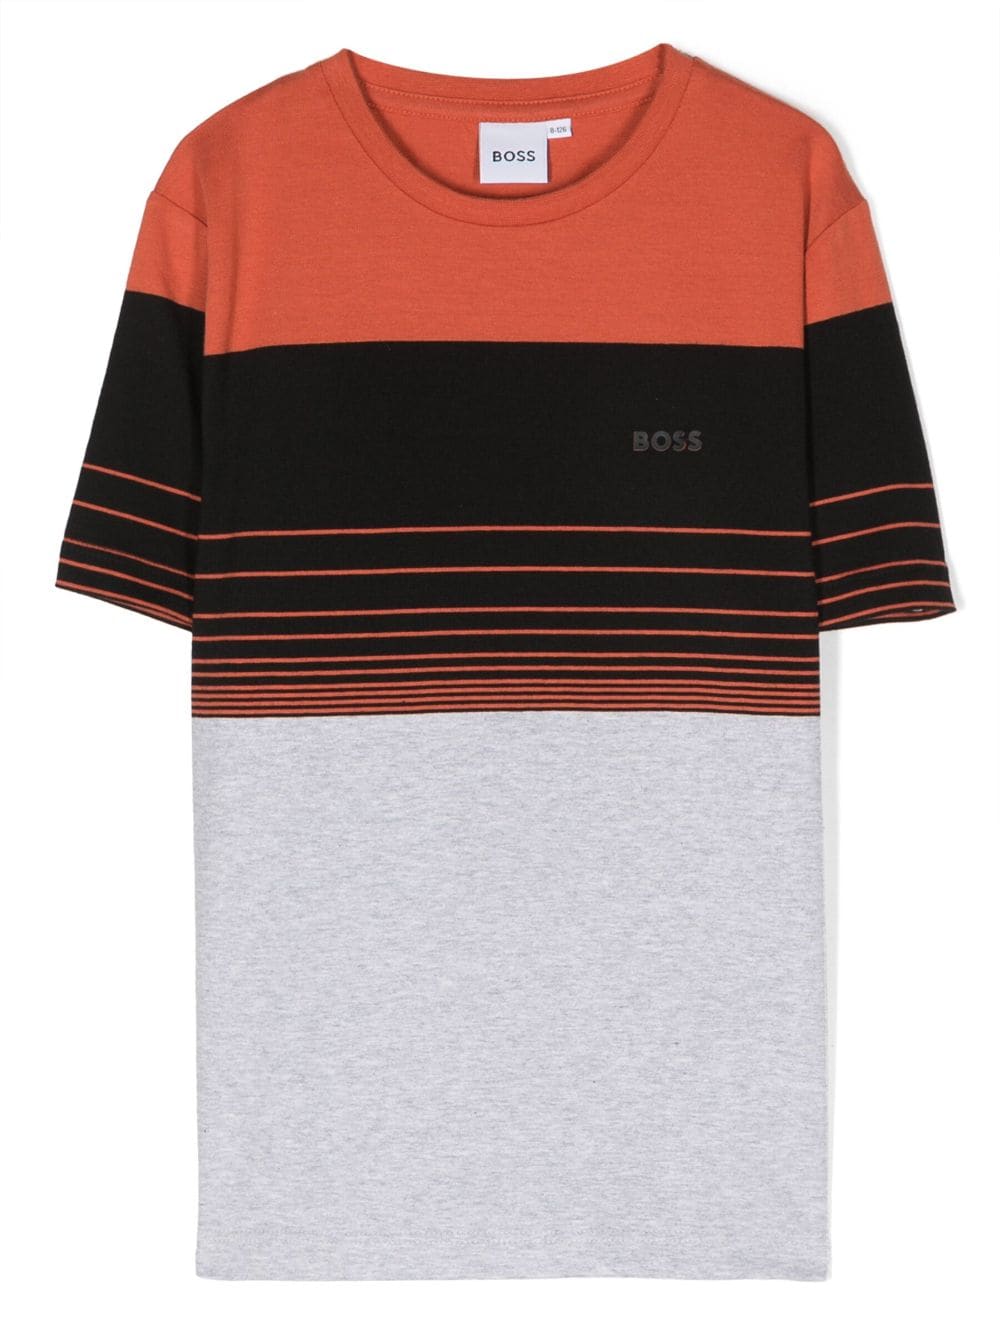 Bosswear Kids' Striped Short-sleeve T-shirt In Orange